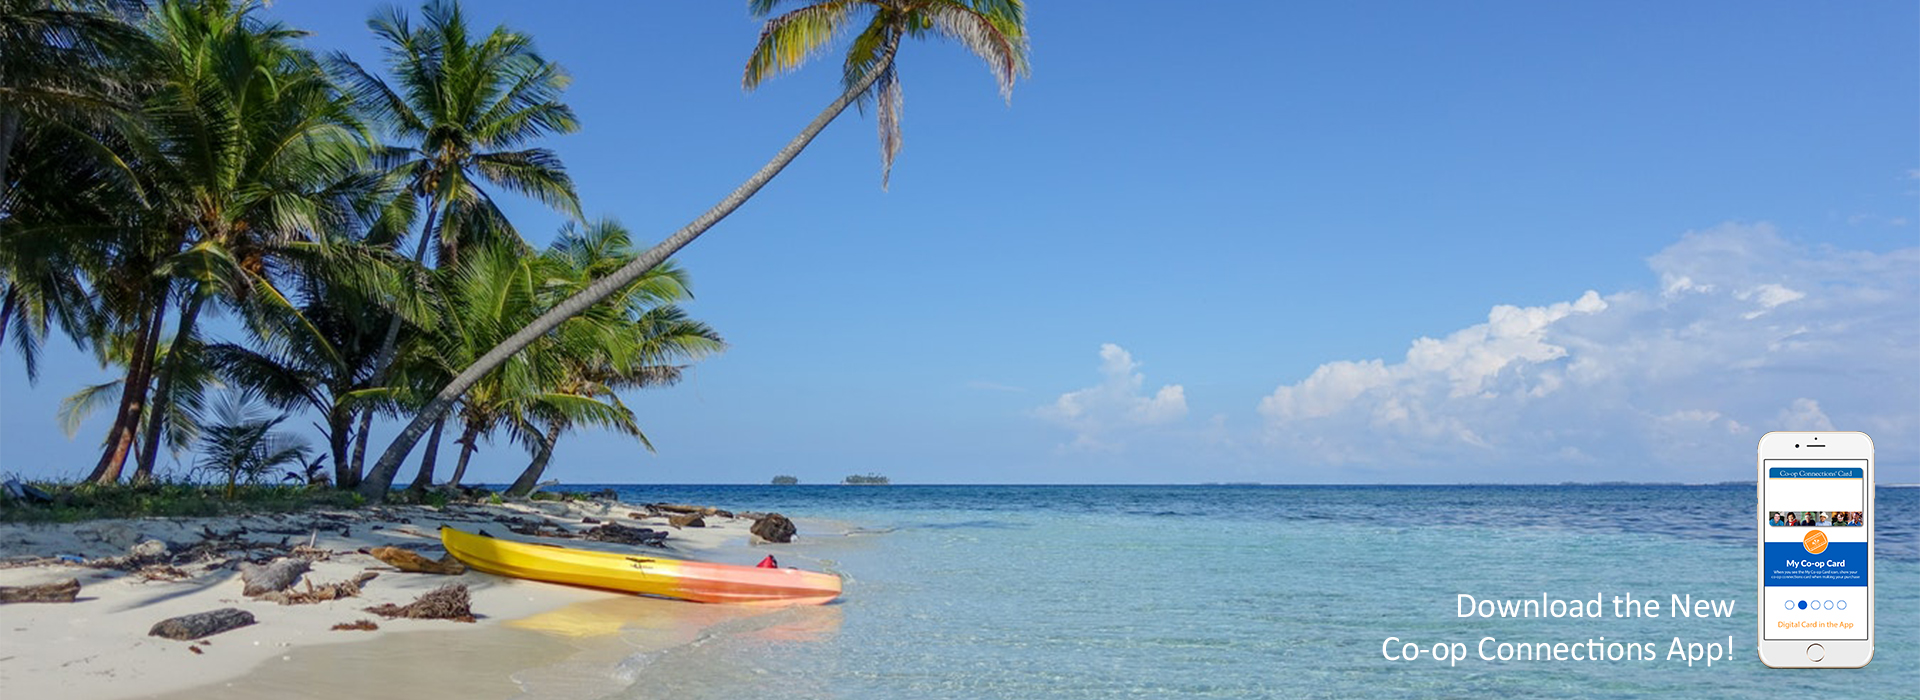 Kayak on a tropical beach